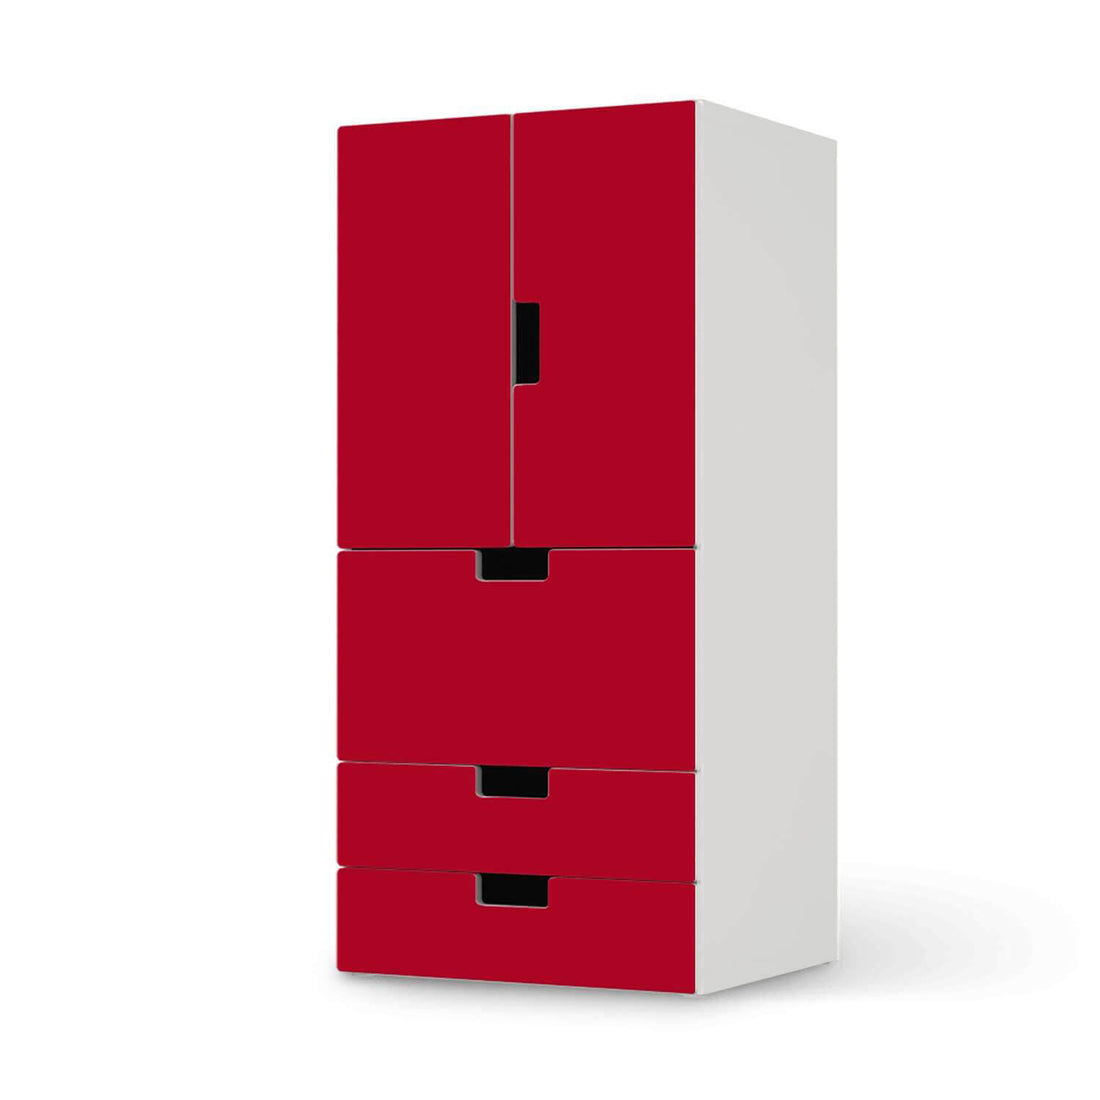 Möbelfolie Rot Dark - IKEA Stuva kombiniert - 3 Schubladen und 2 kleine Türen  - weiss